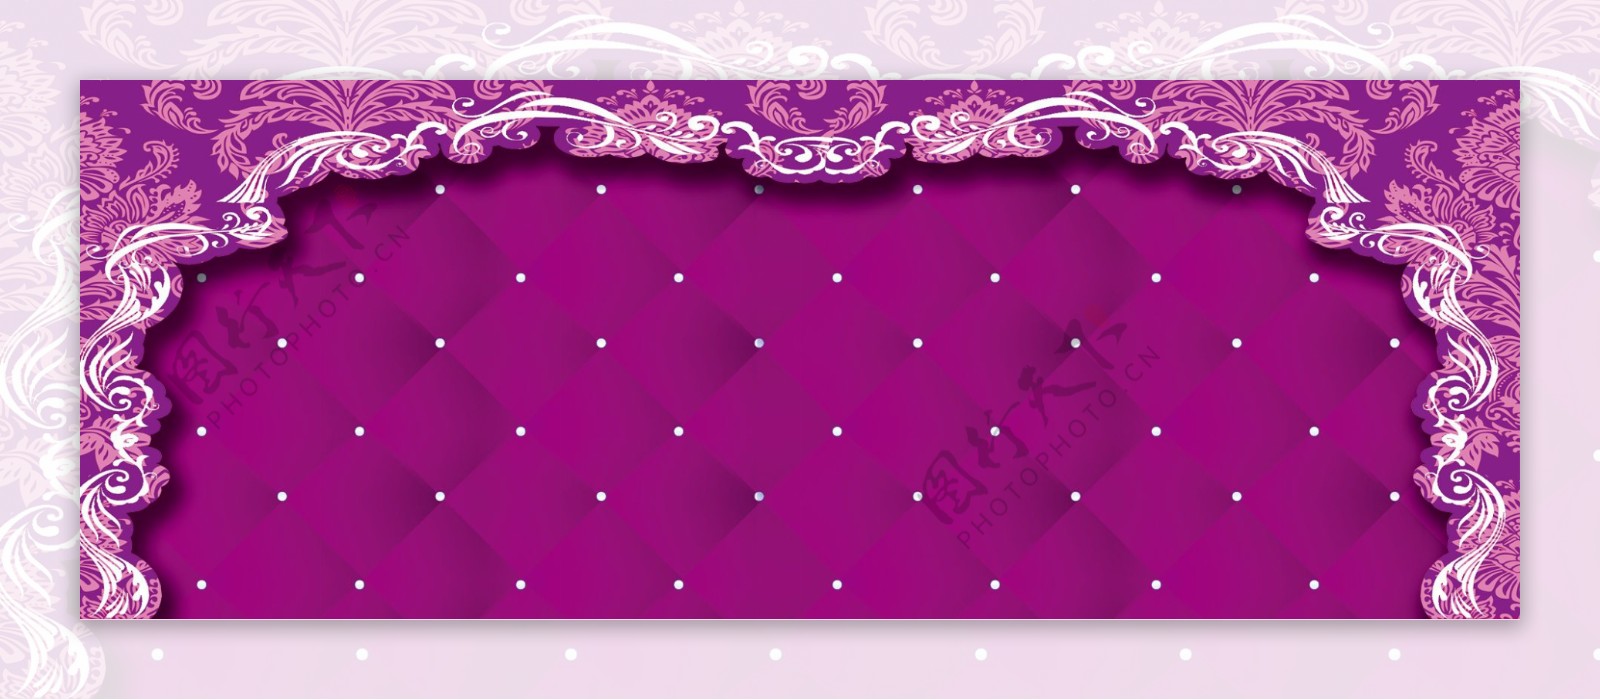 唯美紫色背景图